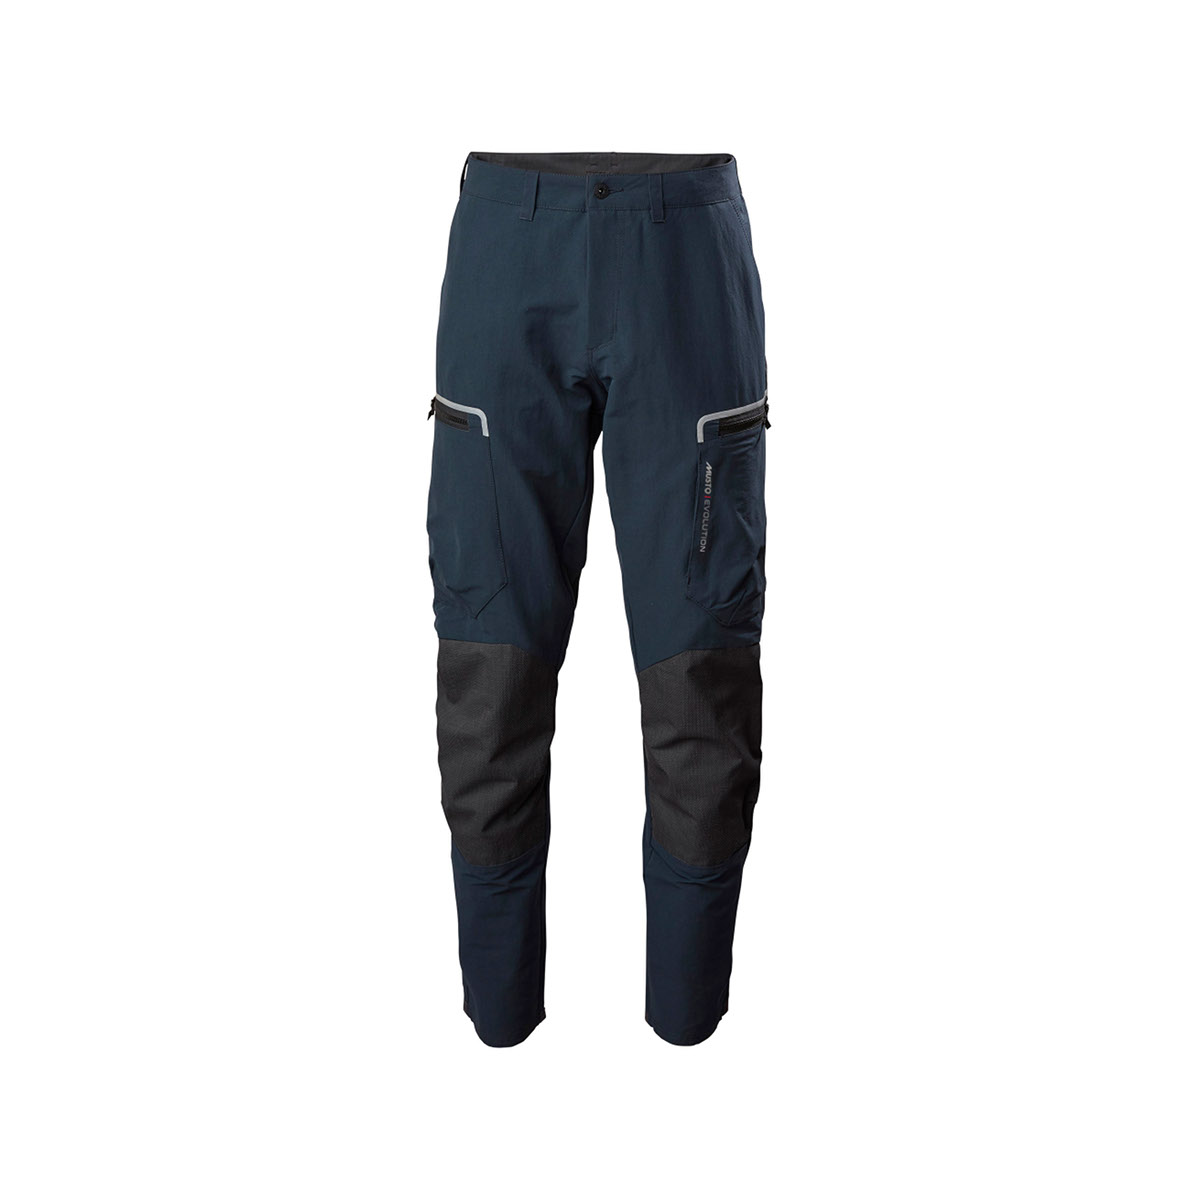 Musto Evolution Performance pantalon de voile 2.0 homme bleu marine, taille 30